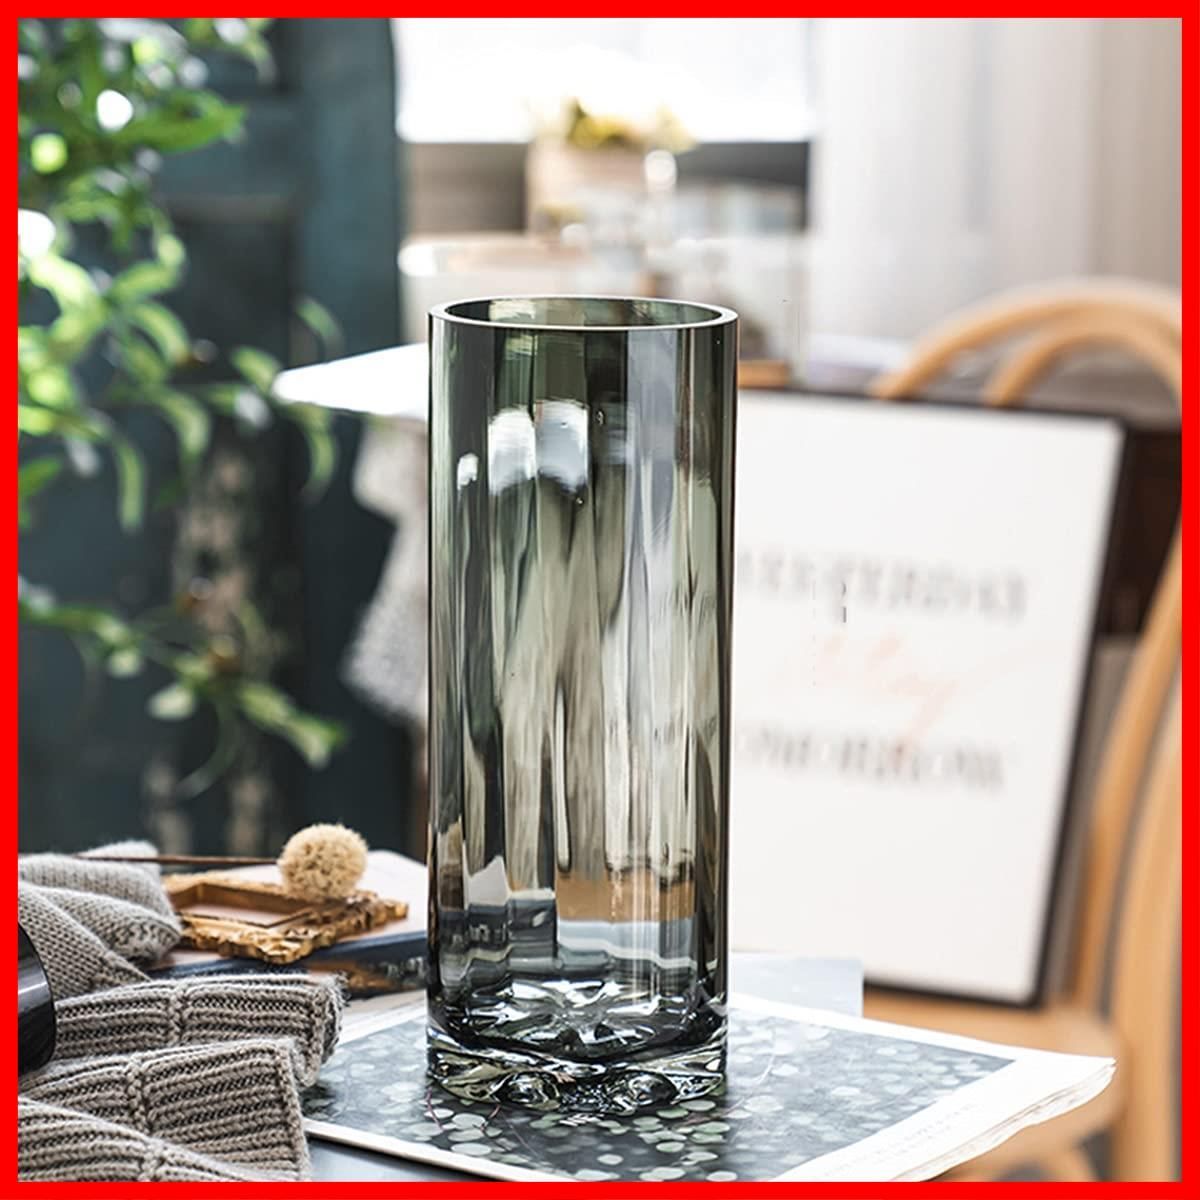 得価人気SALEフラワーベース おしゃれ 花瓶 ガラスベース 花器 透明 大きい エレガント メタルグラスベース シェイプ 送料無料(一部地域除く) sik5031 花瓶